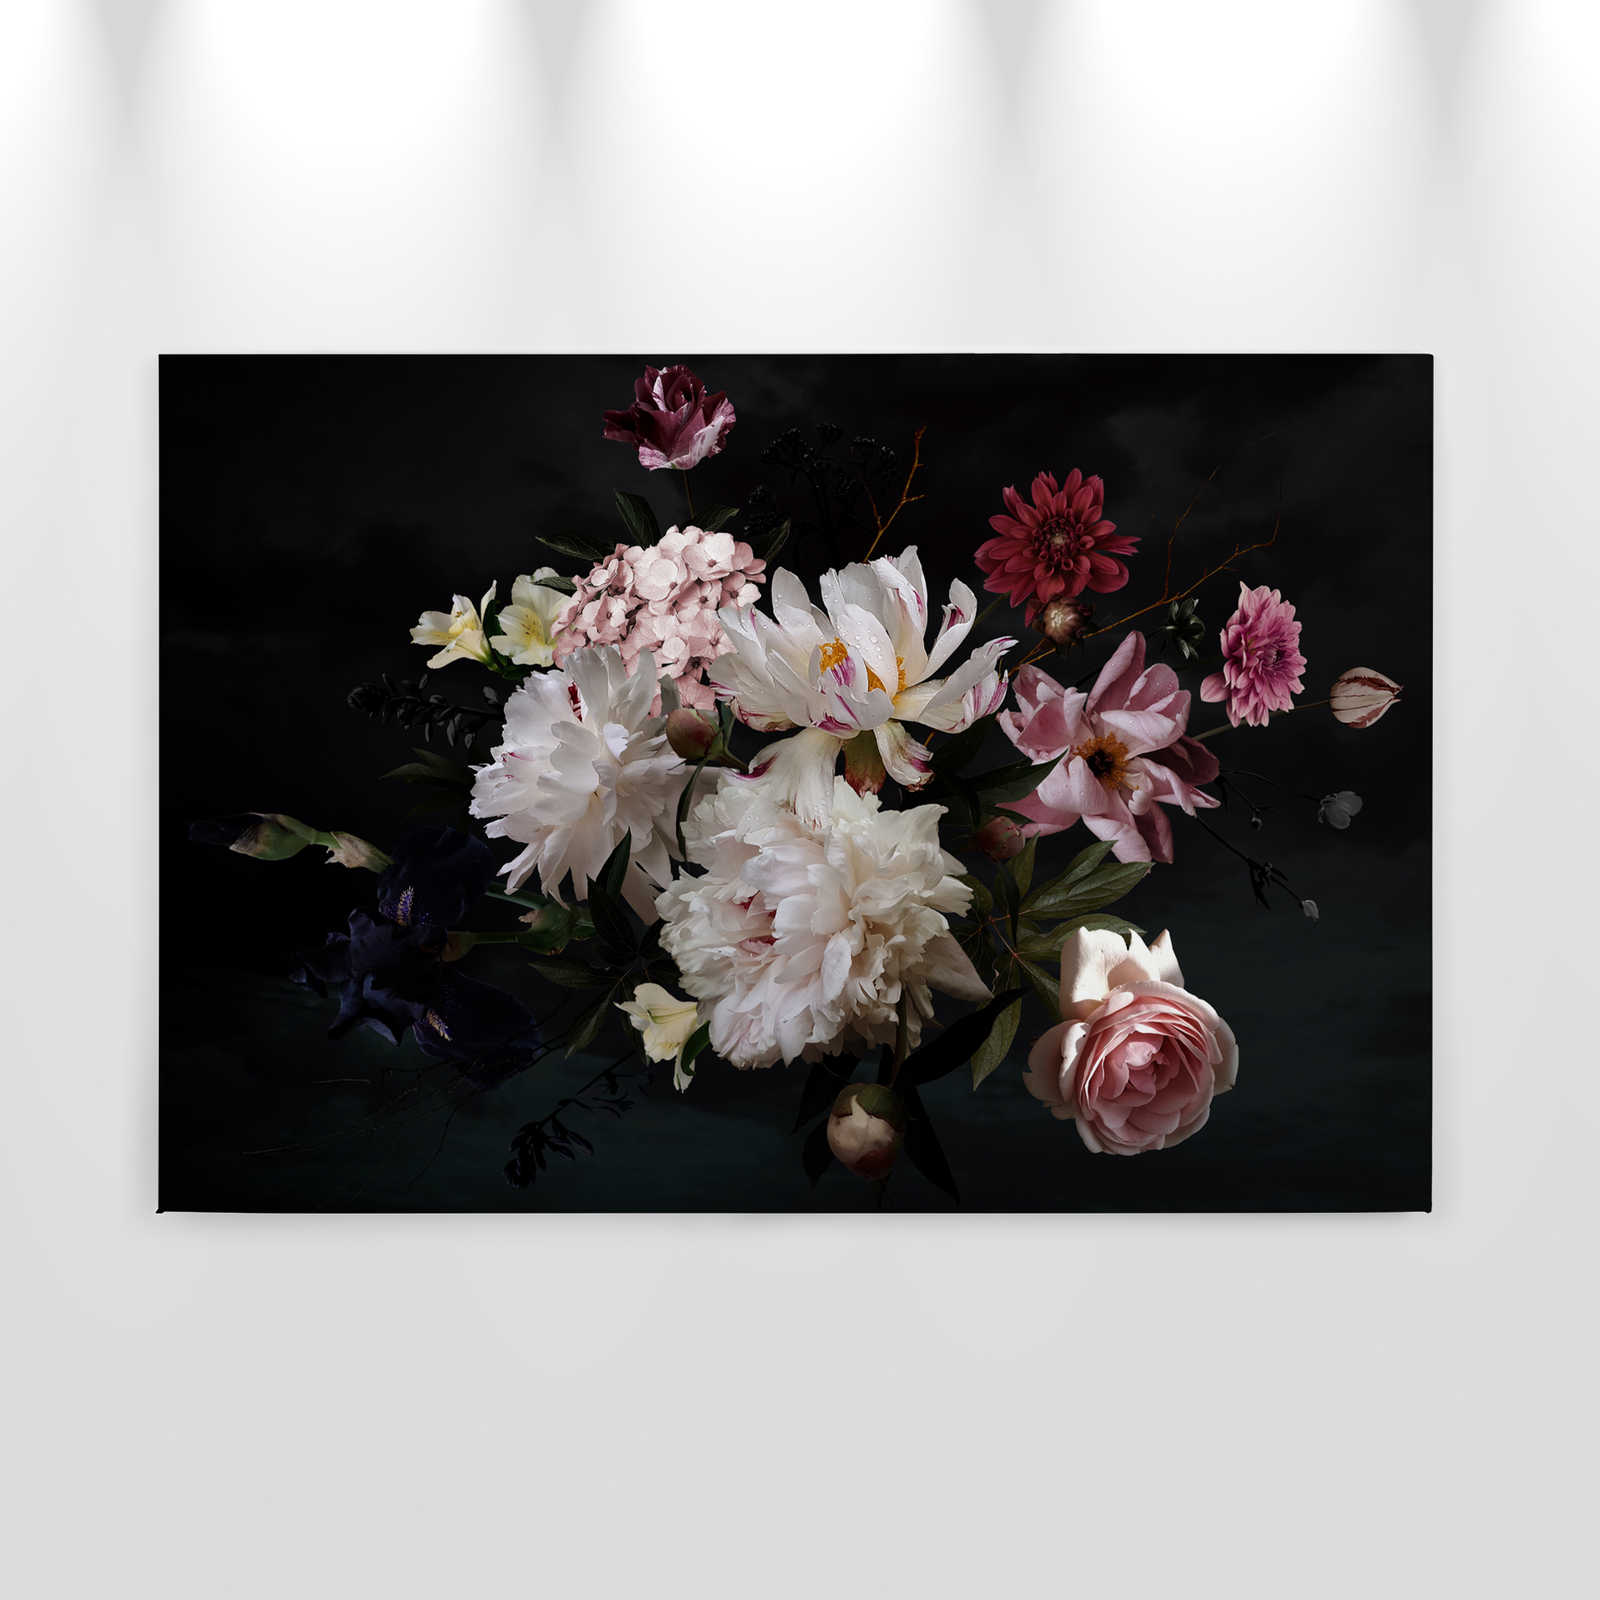             Canvas Bouquet - 0,90 m x 0,60 m
        